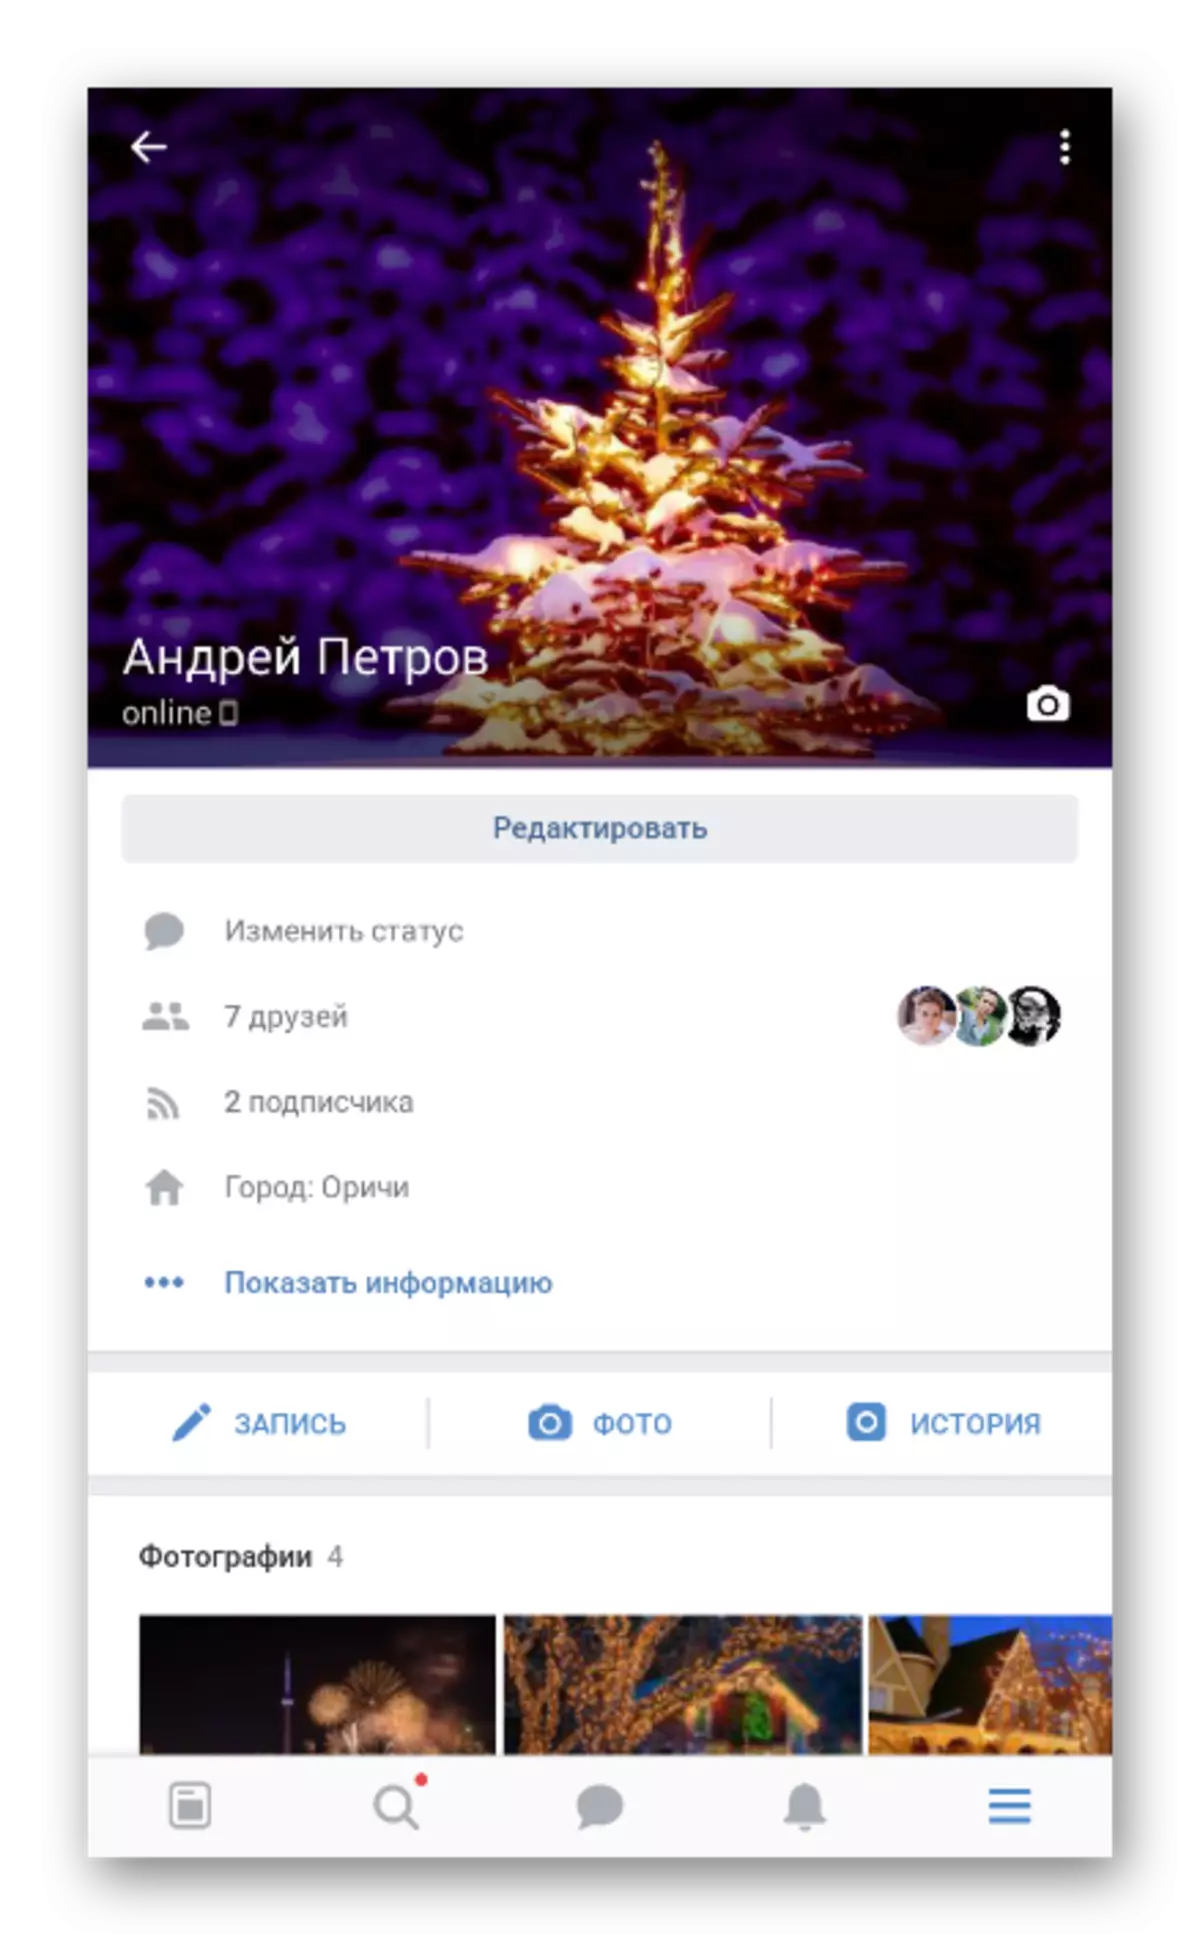 Vkontakte යෙදුමේ ප්රධාන පිටුව බලන්න